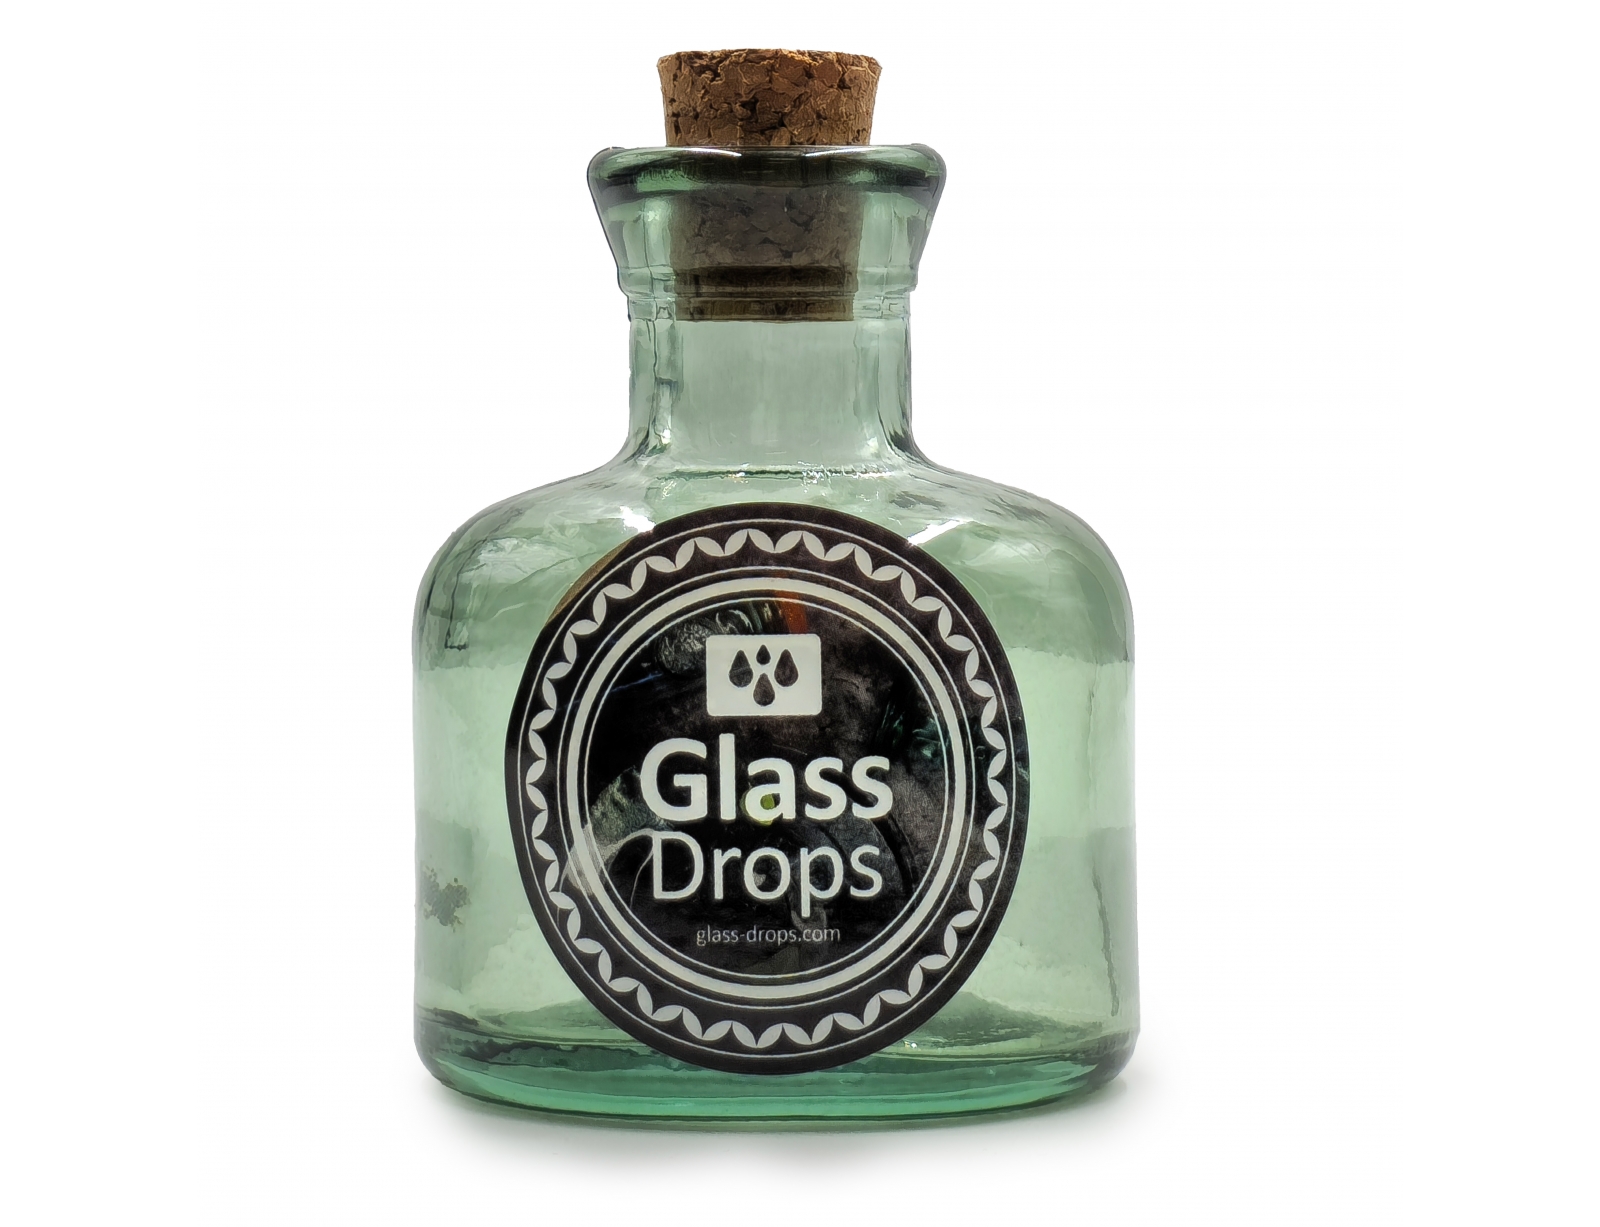 Εικόνα Διακοσμητικό Μπουκάλι με πώμα Glass Drops Ramos (5323DB600) Aπό 100% ανακυκλωμένο γυαλί, Xωρητικότητας 125ml, Διαστάσεων Ø 7 x Υ 10 cm, Νatural Green
